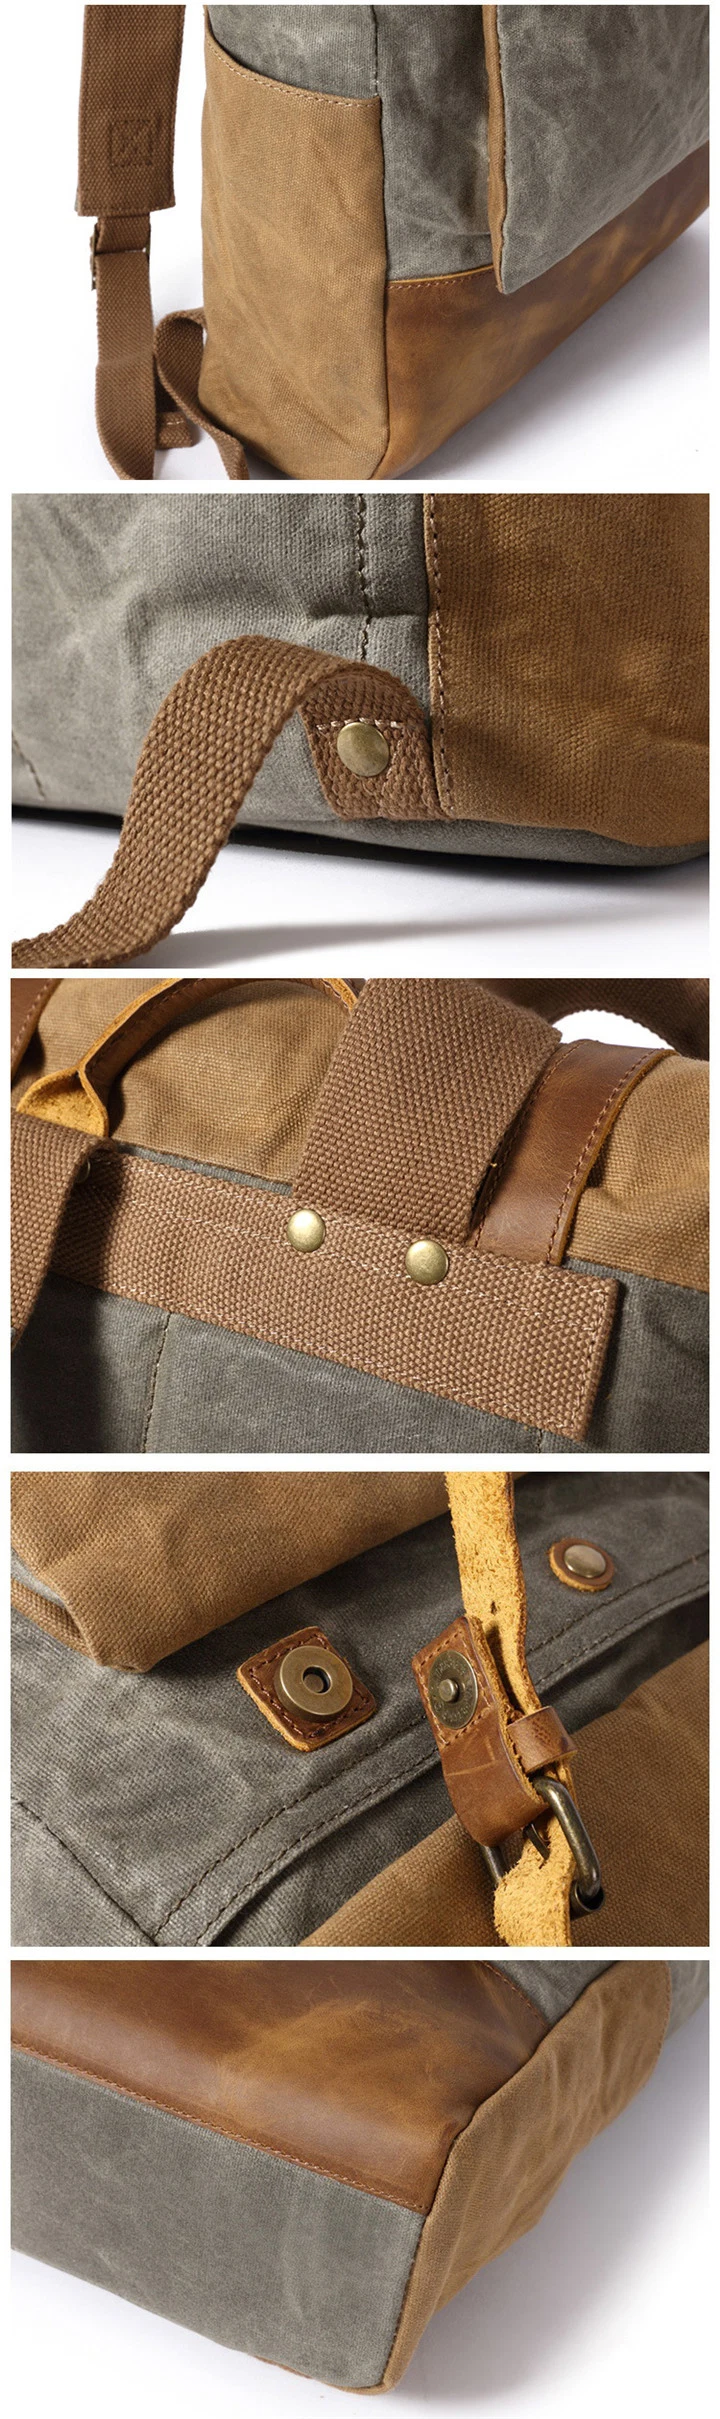 Ga48 Vintage Classic OEM Mountaineering Military Sport Mens Backpacks Bag Hiking Rucksack Travel Waterproof Roll Top Genuine Leather Canvas Backpack